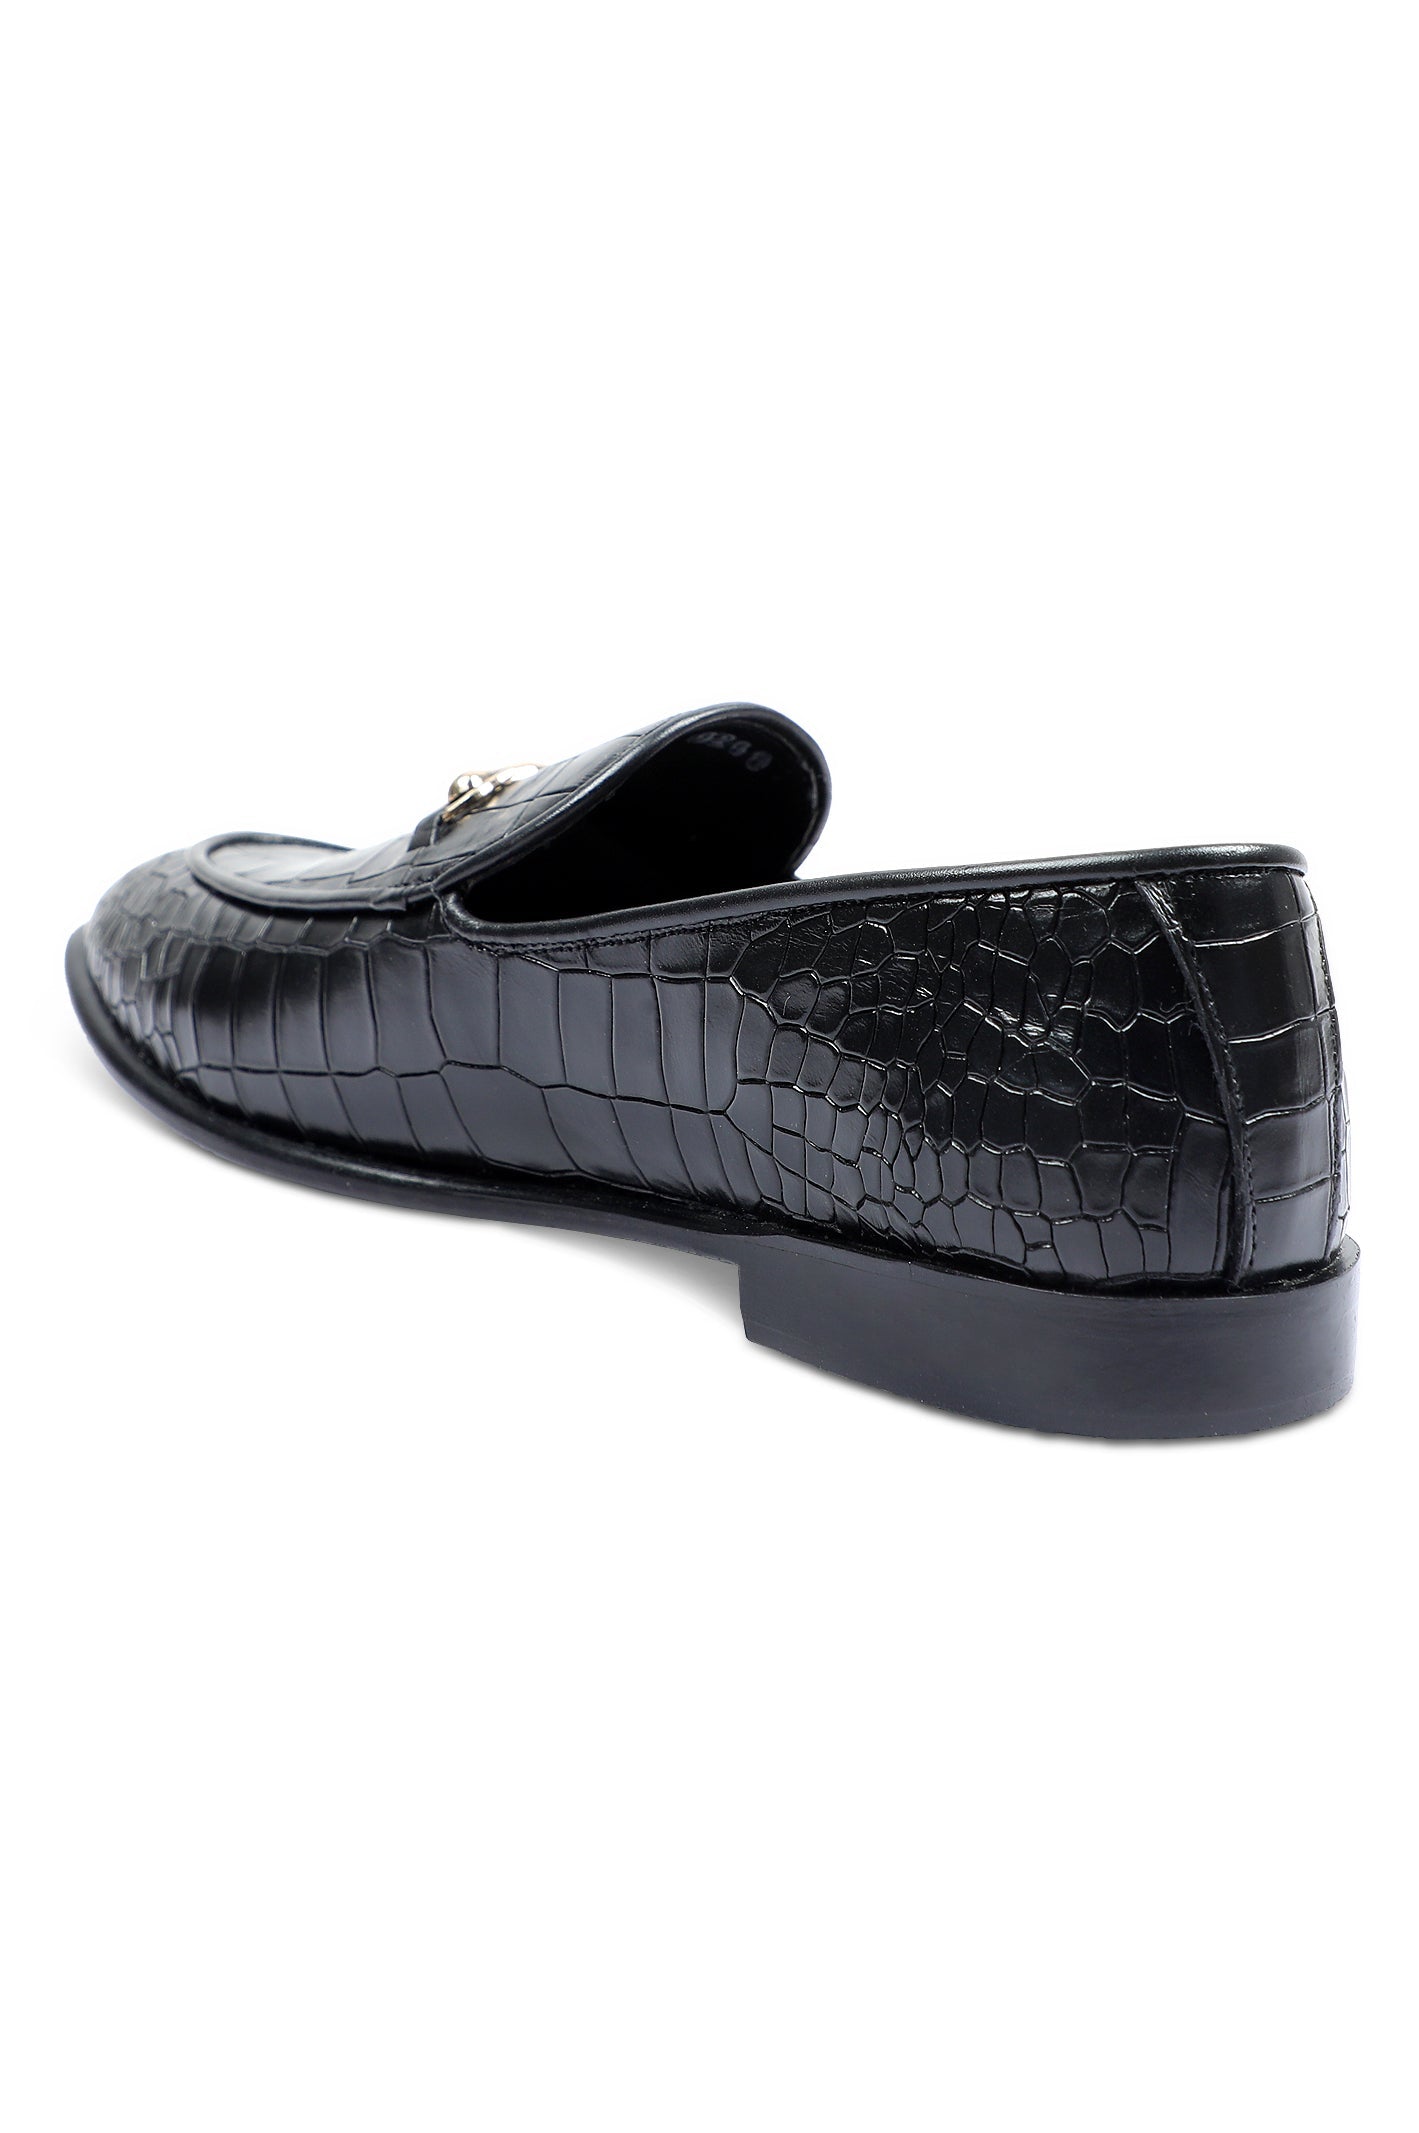 Formal Shoes For Men in Black SKU: SMF-0200-Black - Diners